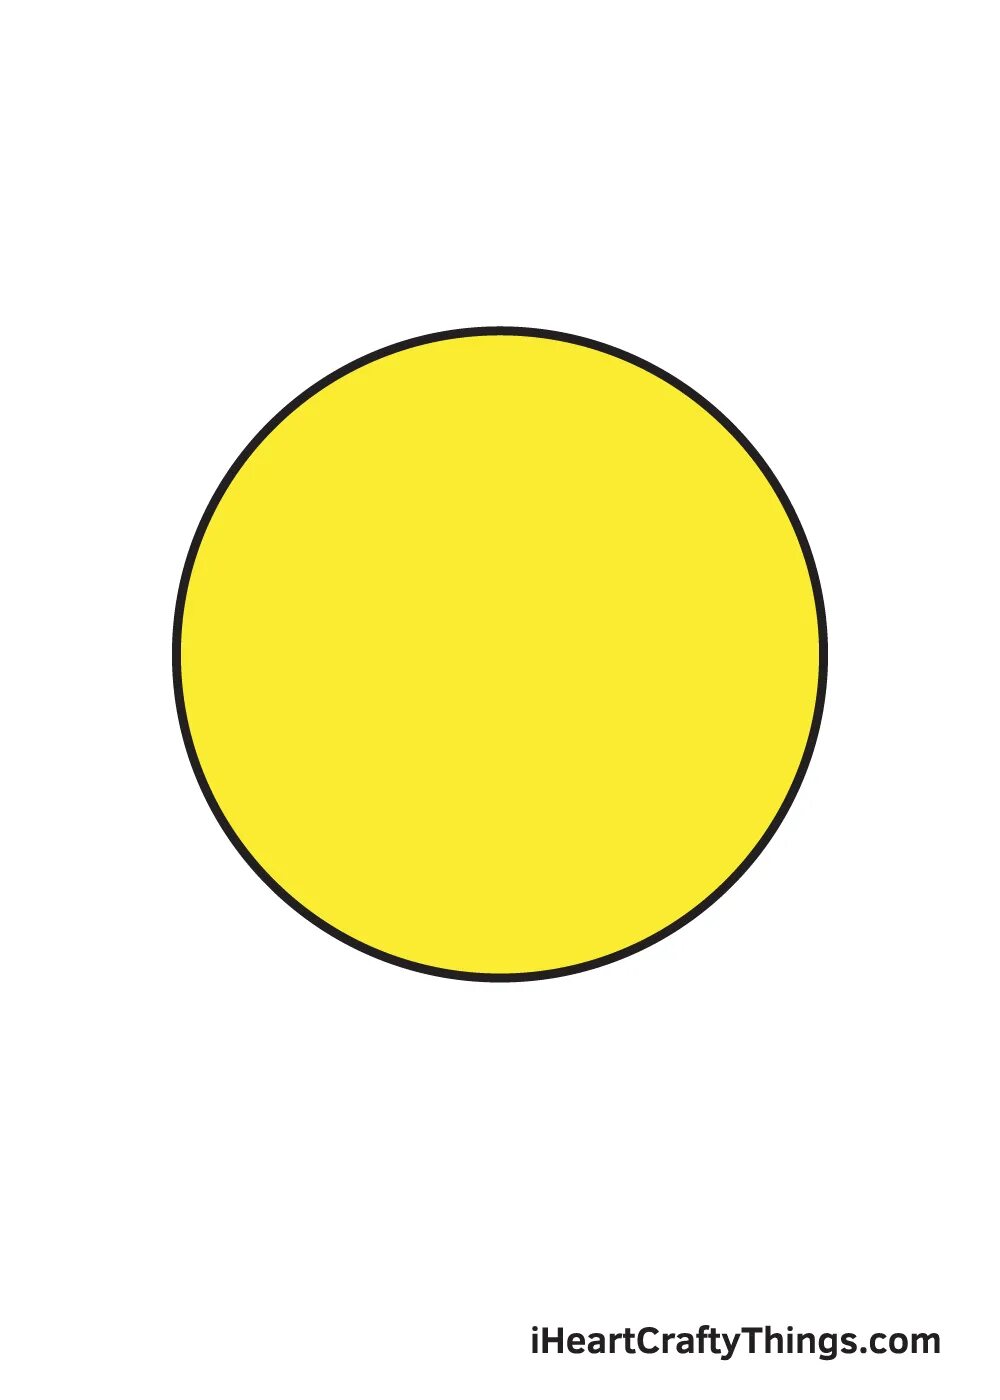 Круг желтый лист. Желтые кружочки. Кружочки желтого цвета. Круг желтого цвета для детей. Цветной круг желтый.